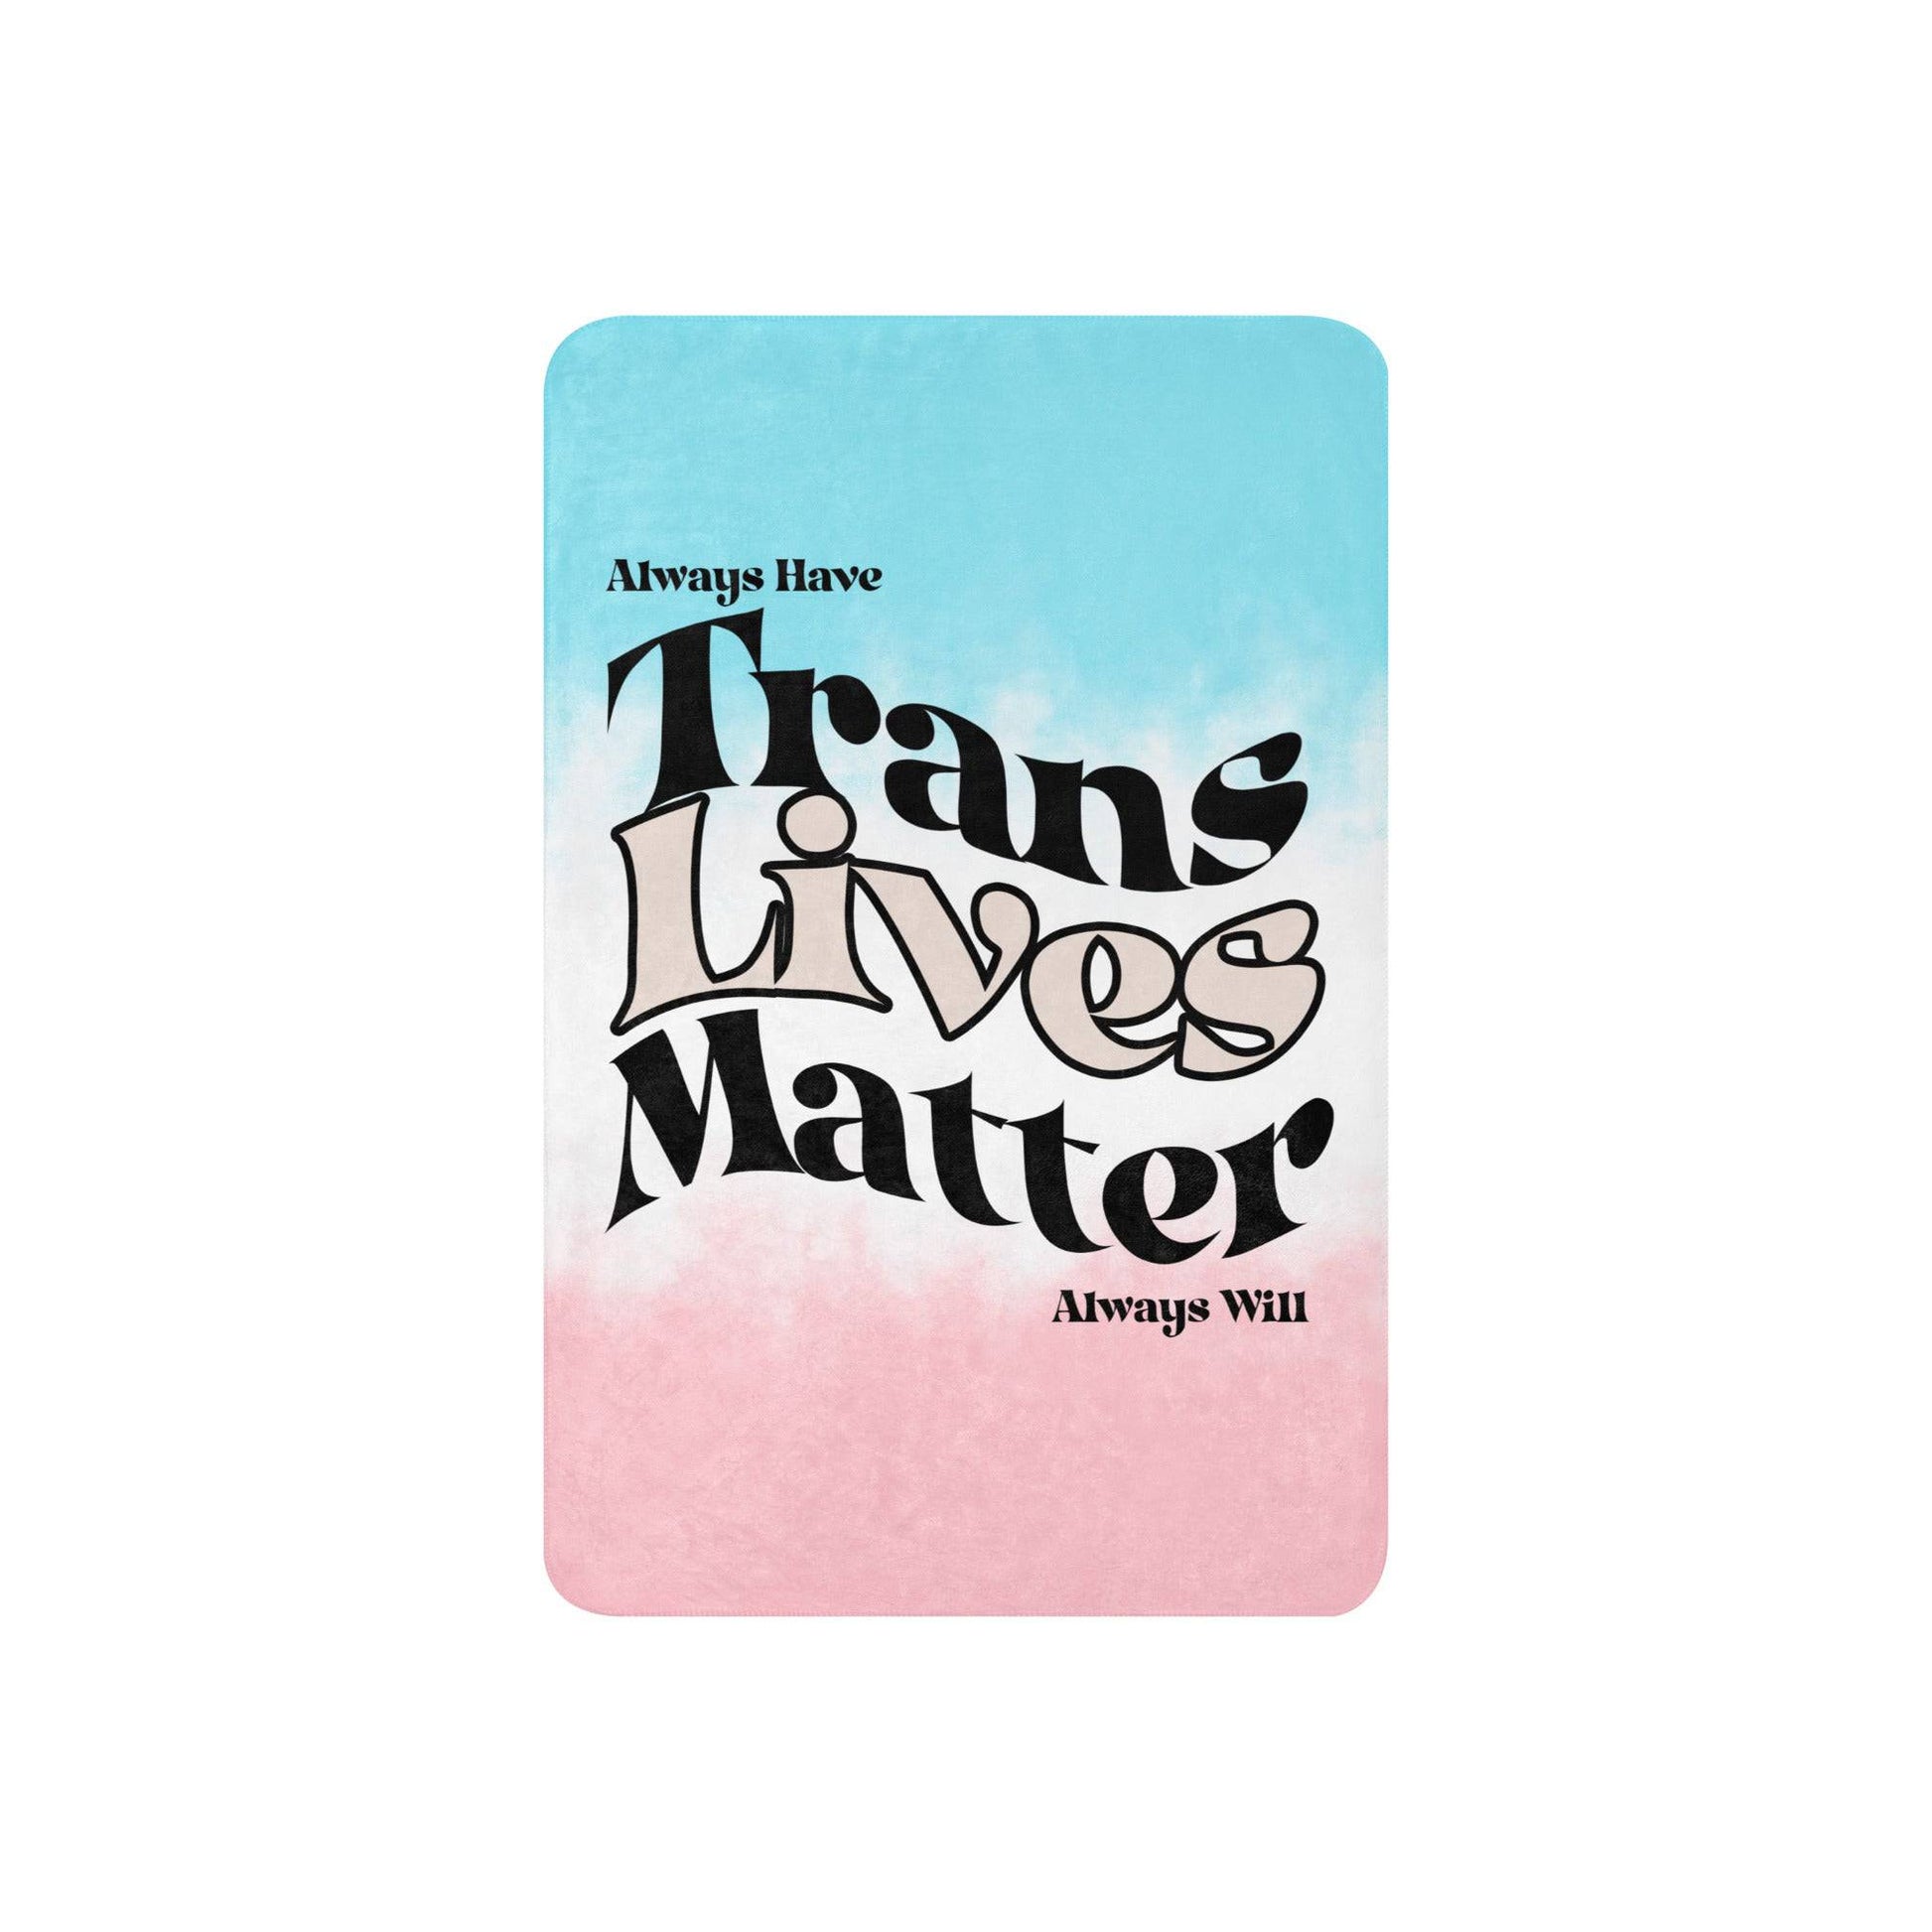 Trans Lives Matter Sherpa blanket - Rose Gold Co. Shop